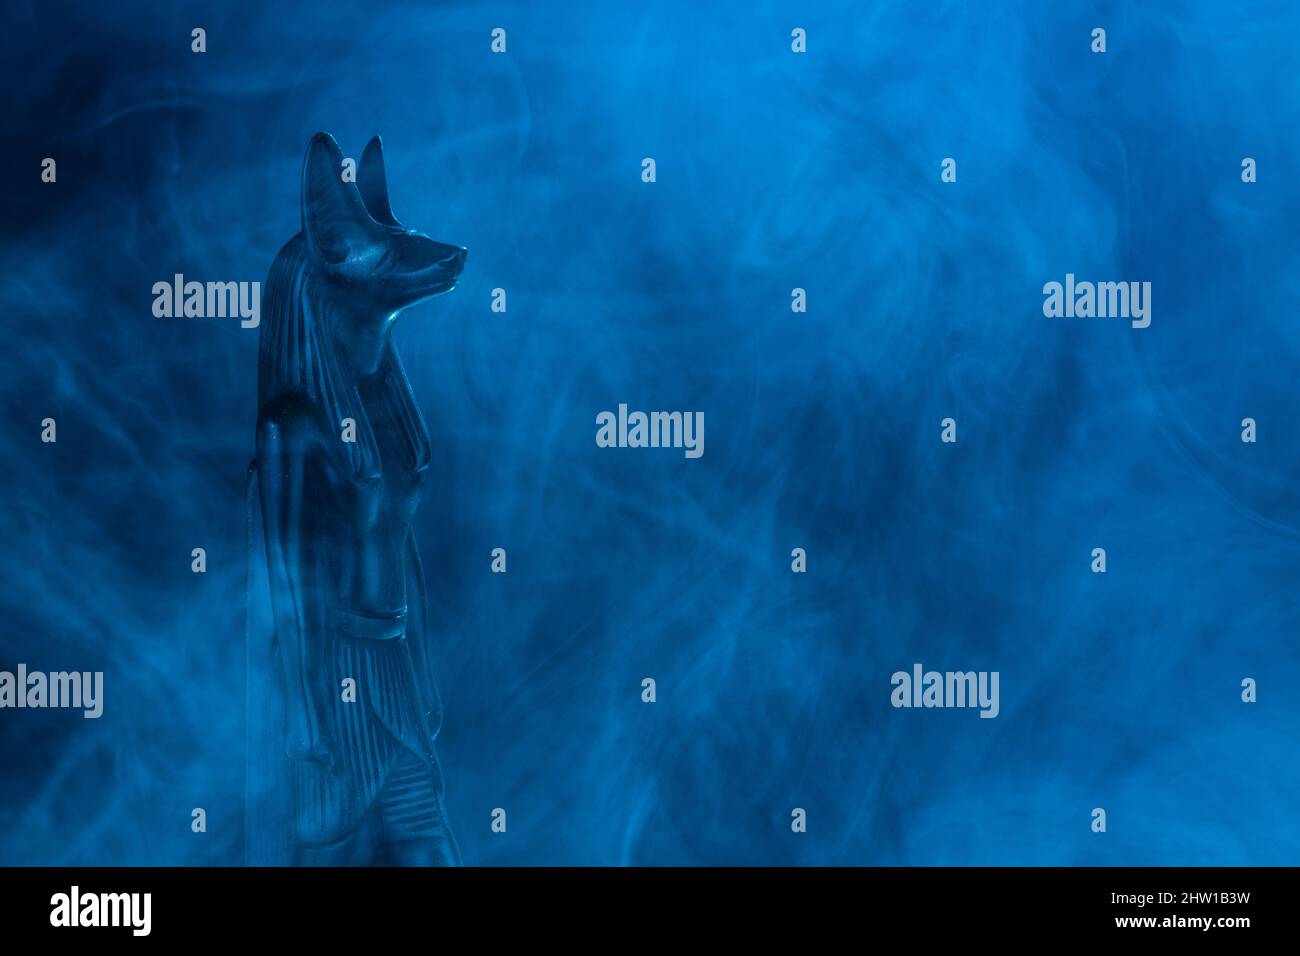 Statue égyptienne du dieu de la mort Anubis en pierre noire dans un brouillard bleu sur fond noir. Photo de haute qualité Banque D'Images